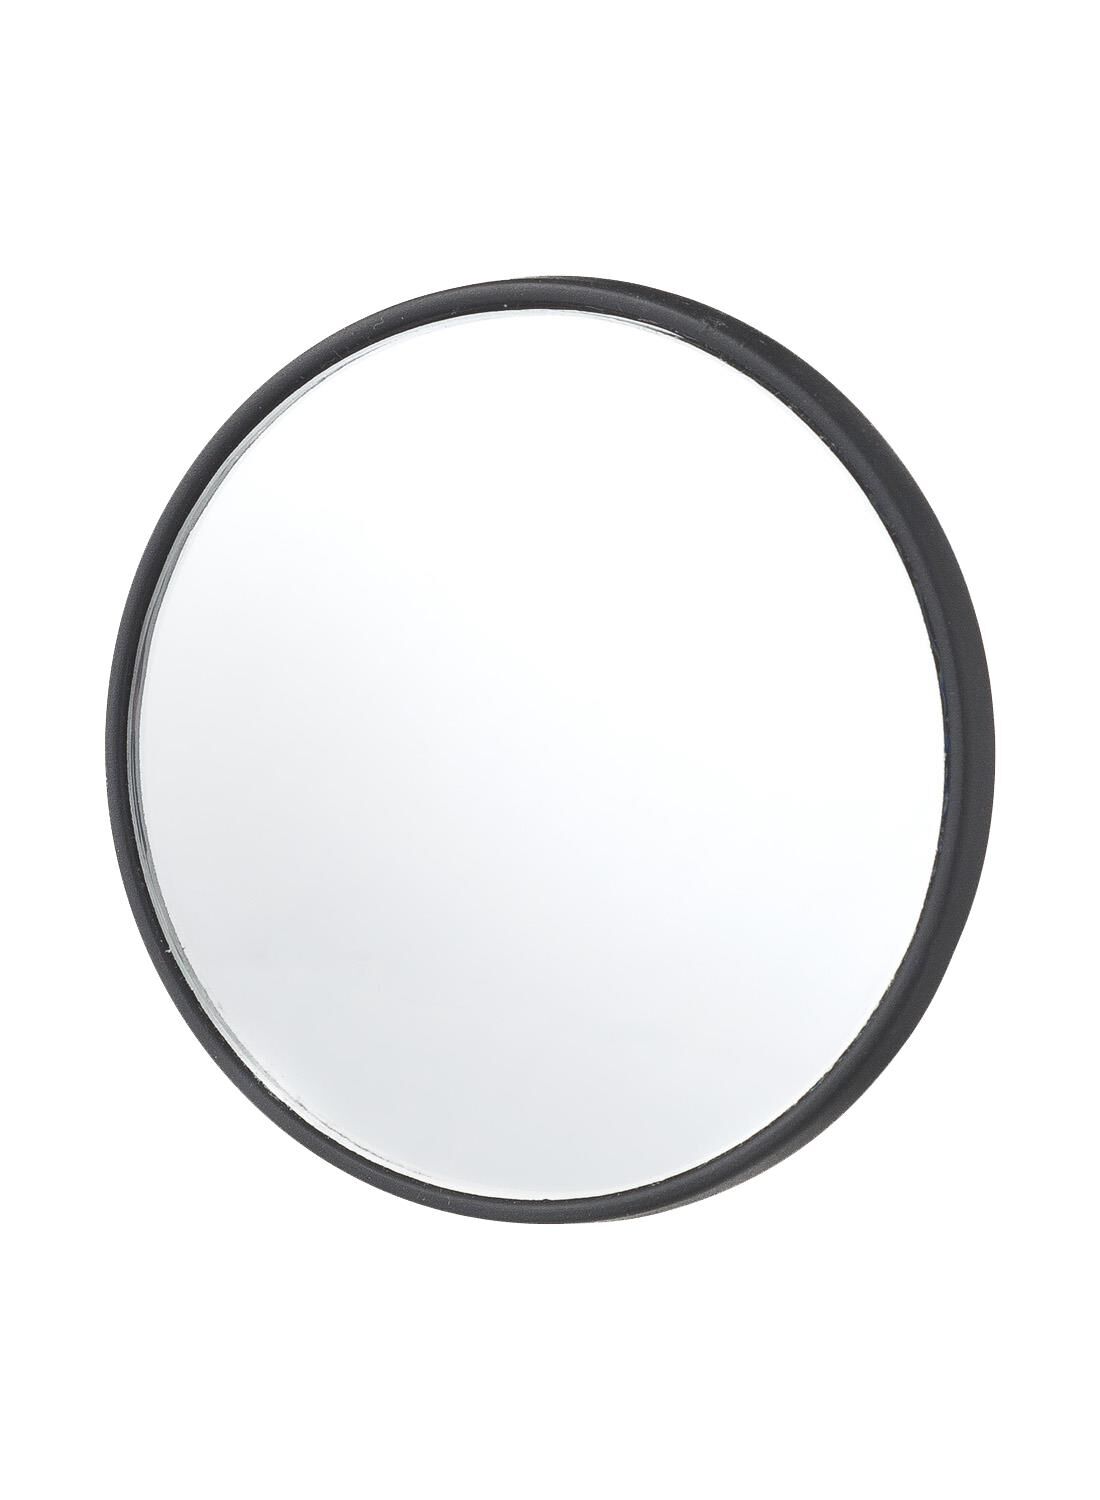 Make-up spiegel kopen? Shop nu online